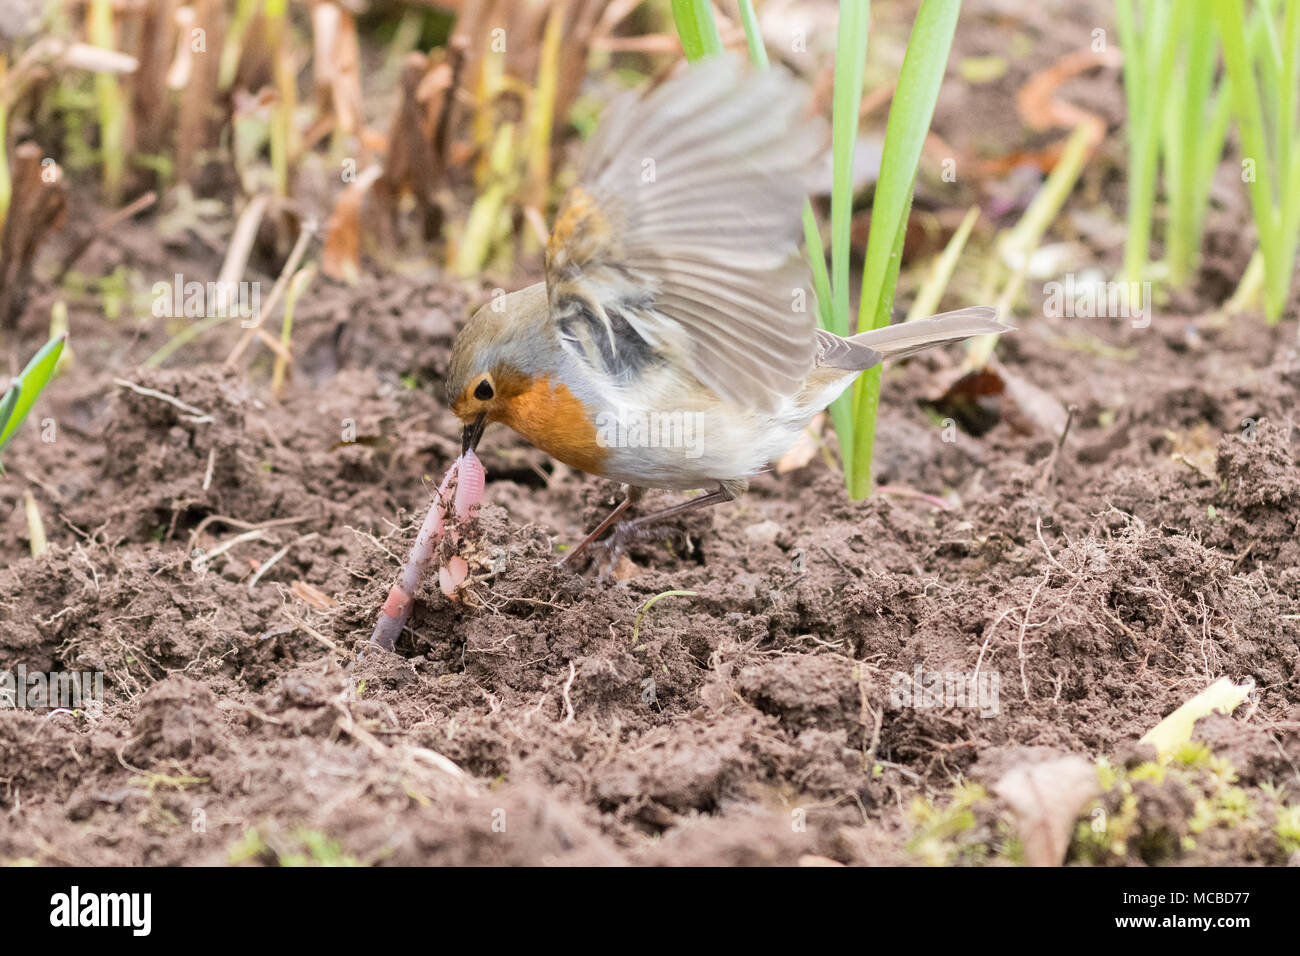 Petirrojo Erithacus rubecula tirando de un gusano que ha sido descubierto por un jardinero Foto de stock